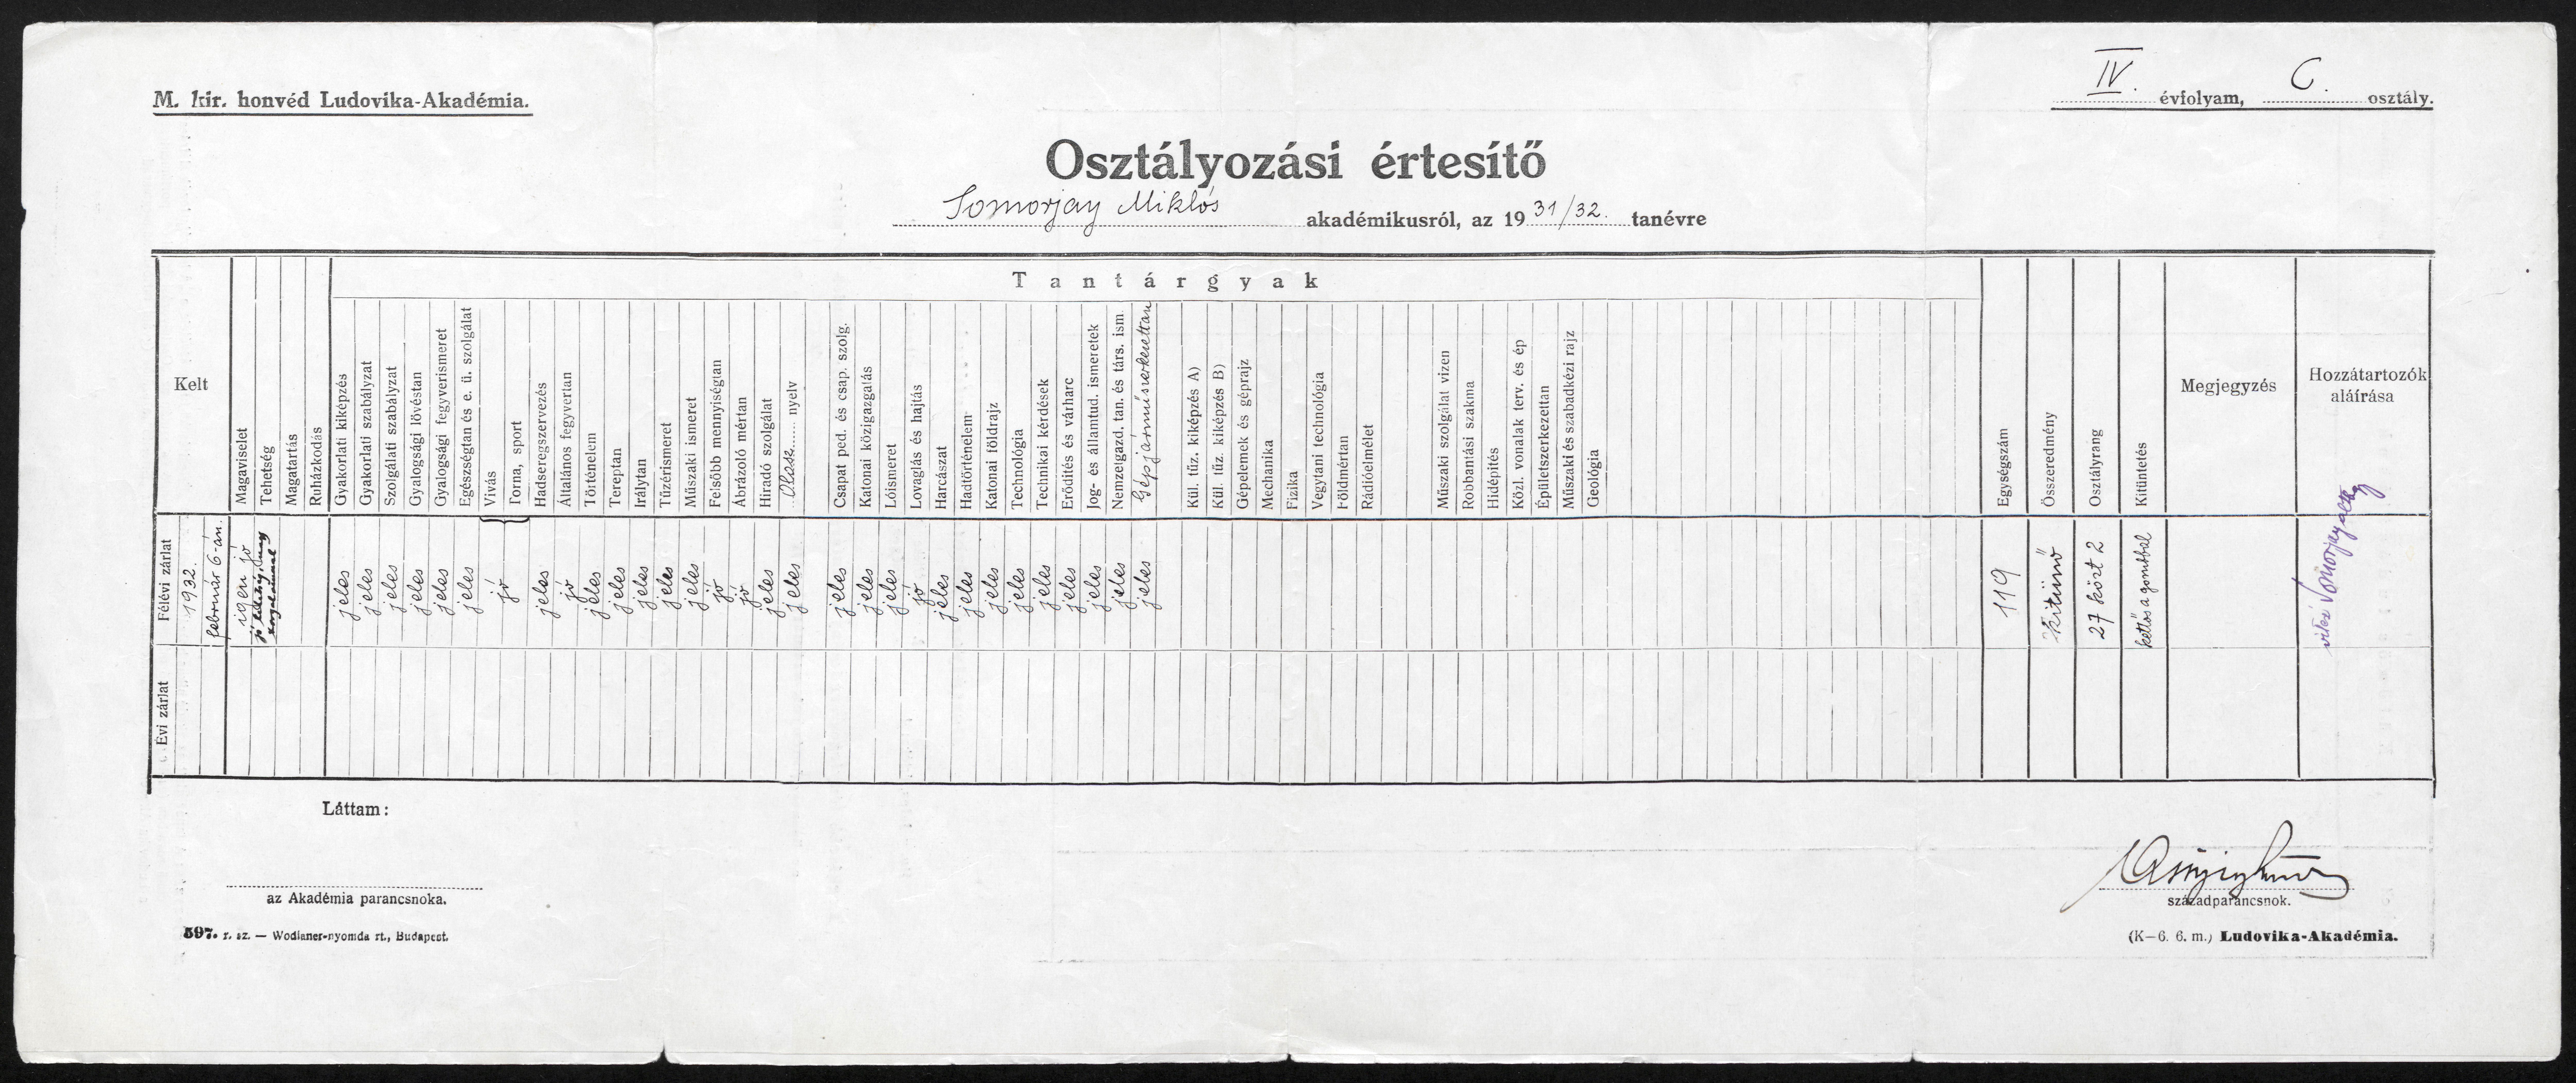 Osztályozási értesító Somorjay Miklós akadémikusról, az 1931/32. tanévre